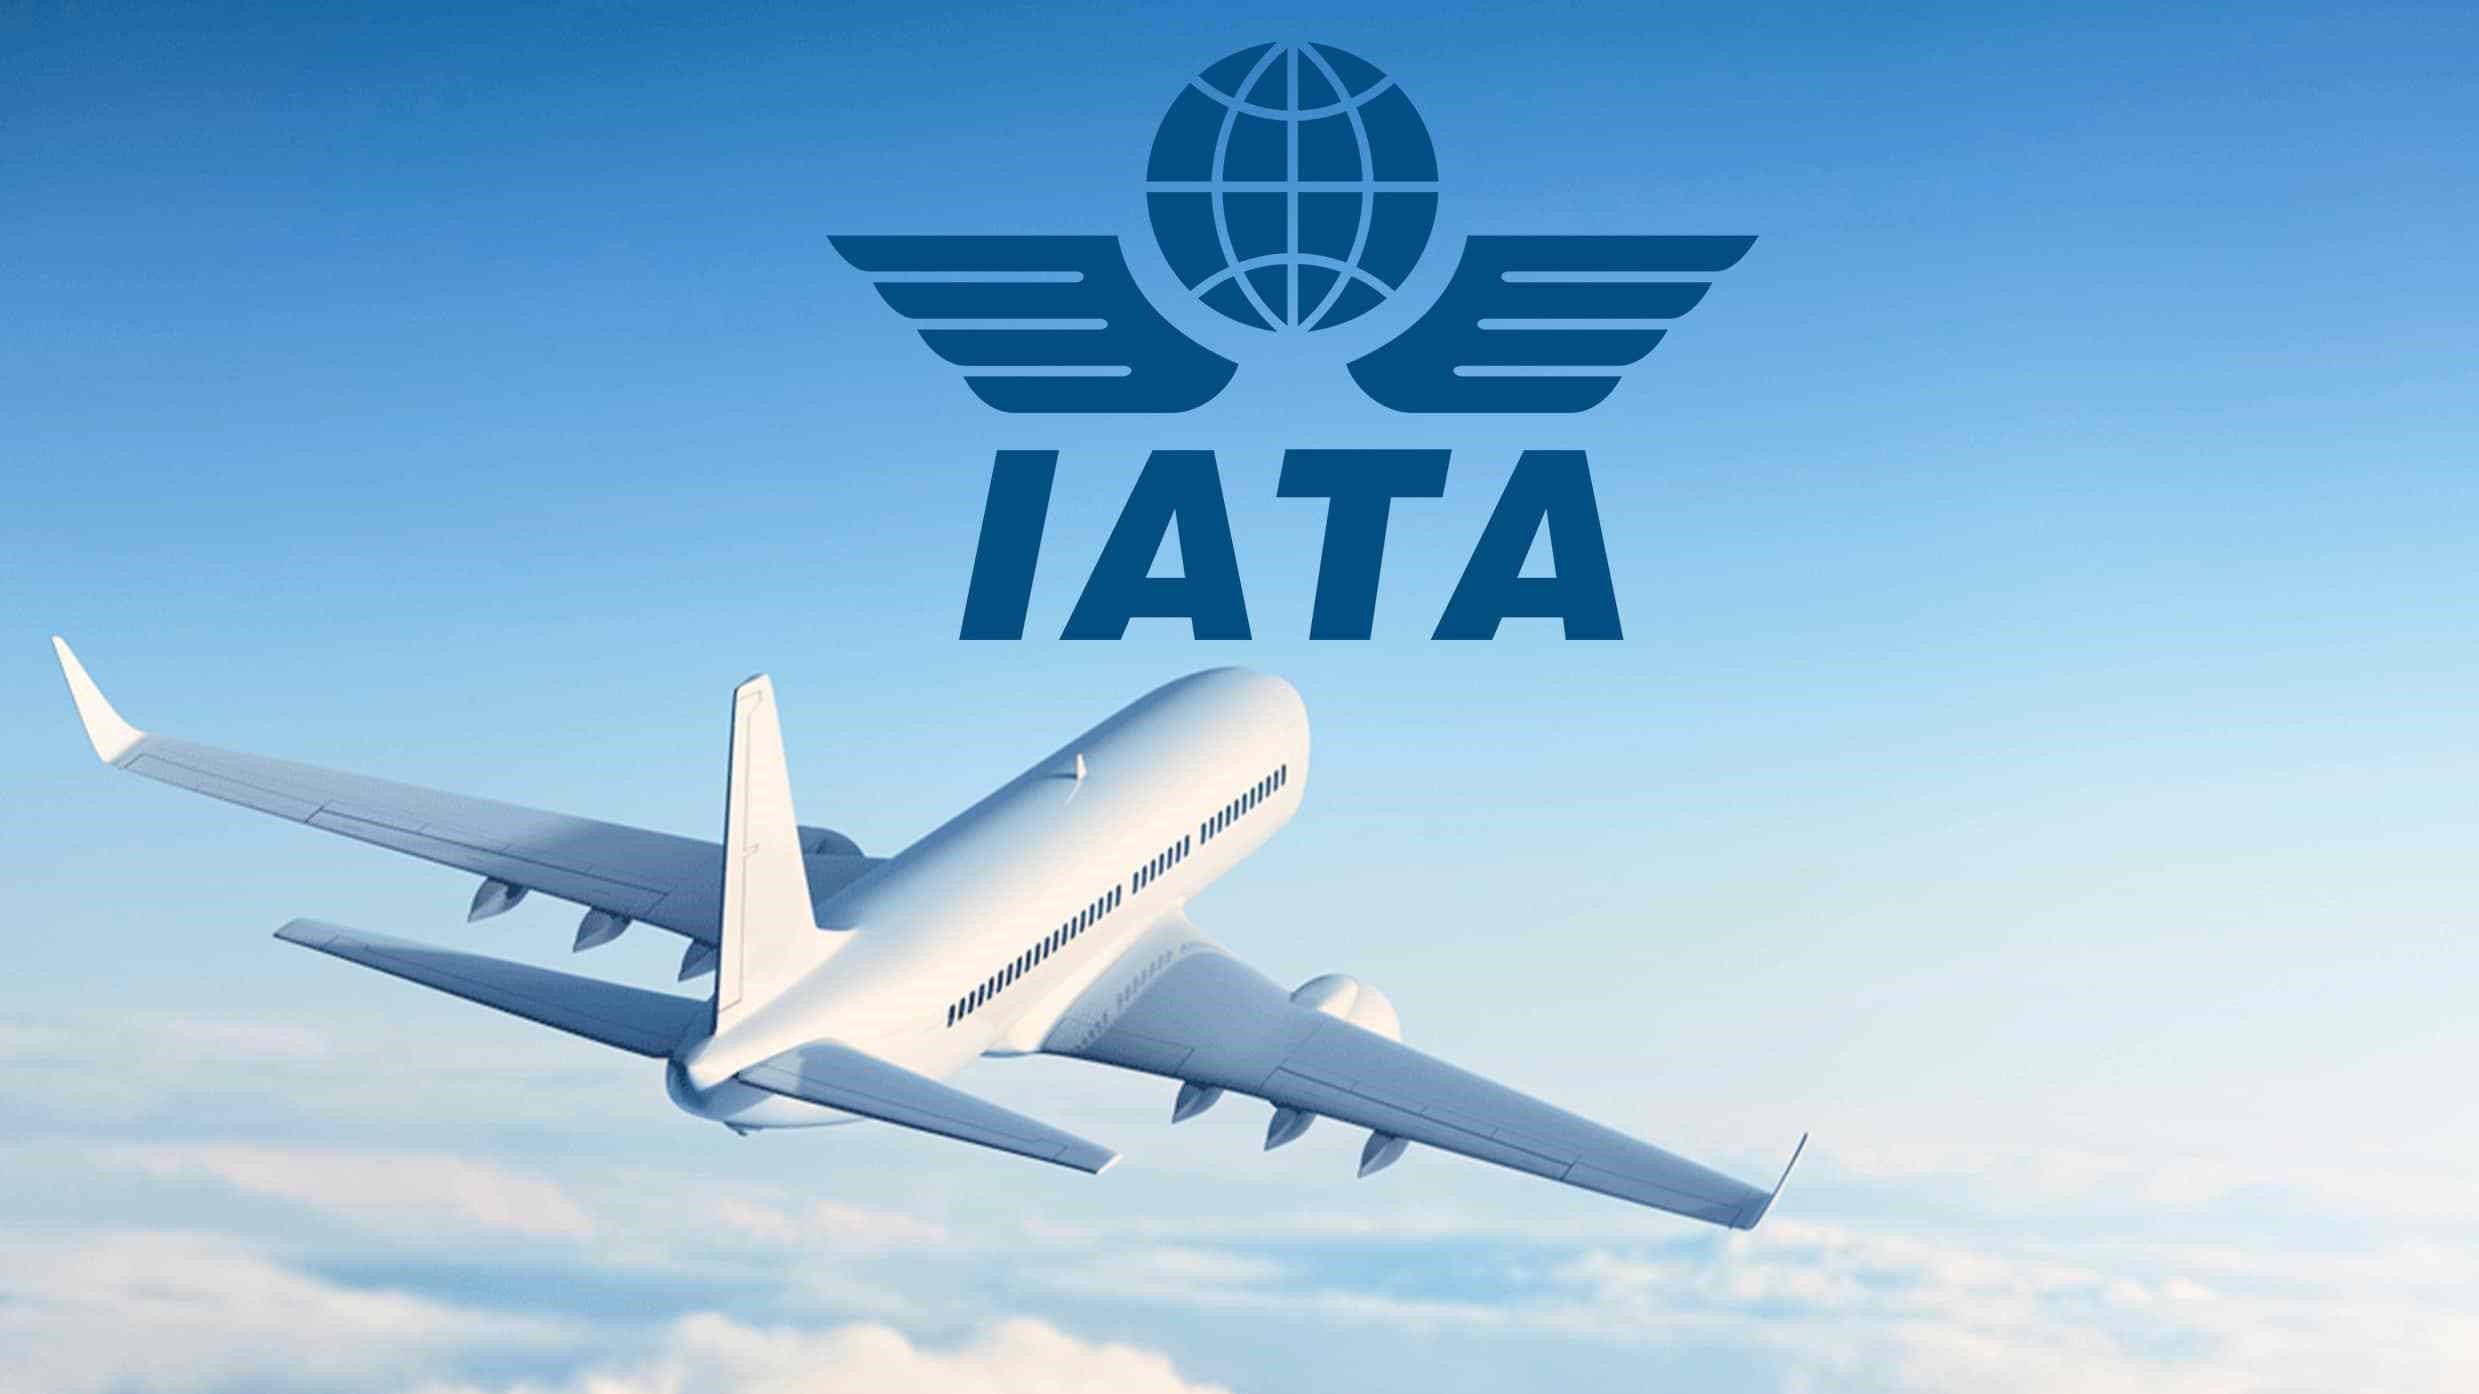 IATA: Ngành hàng không quốc tế cần ít nhất 3 năm để phục hồi trở lại